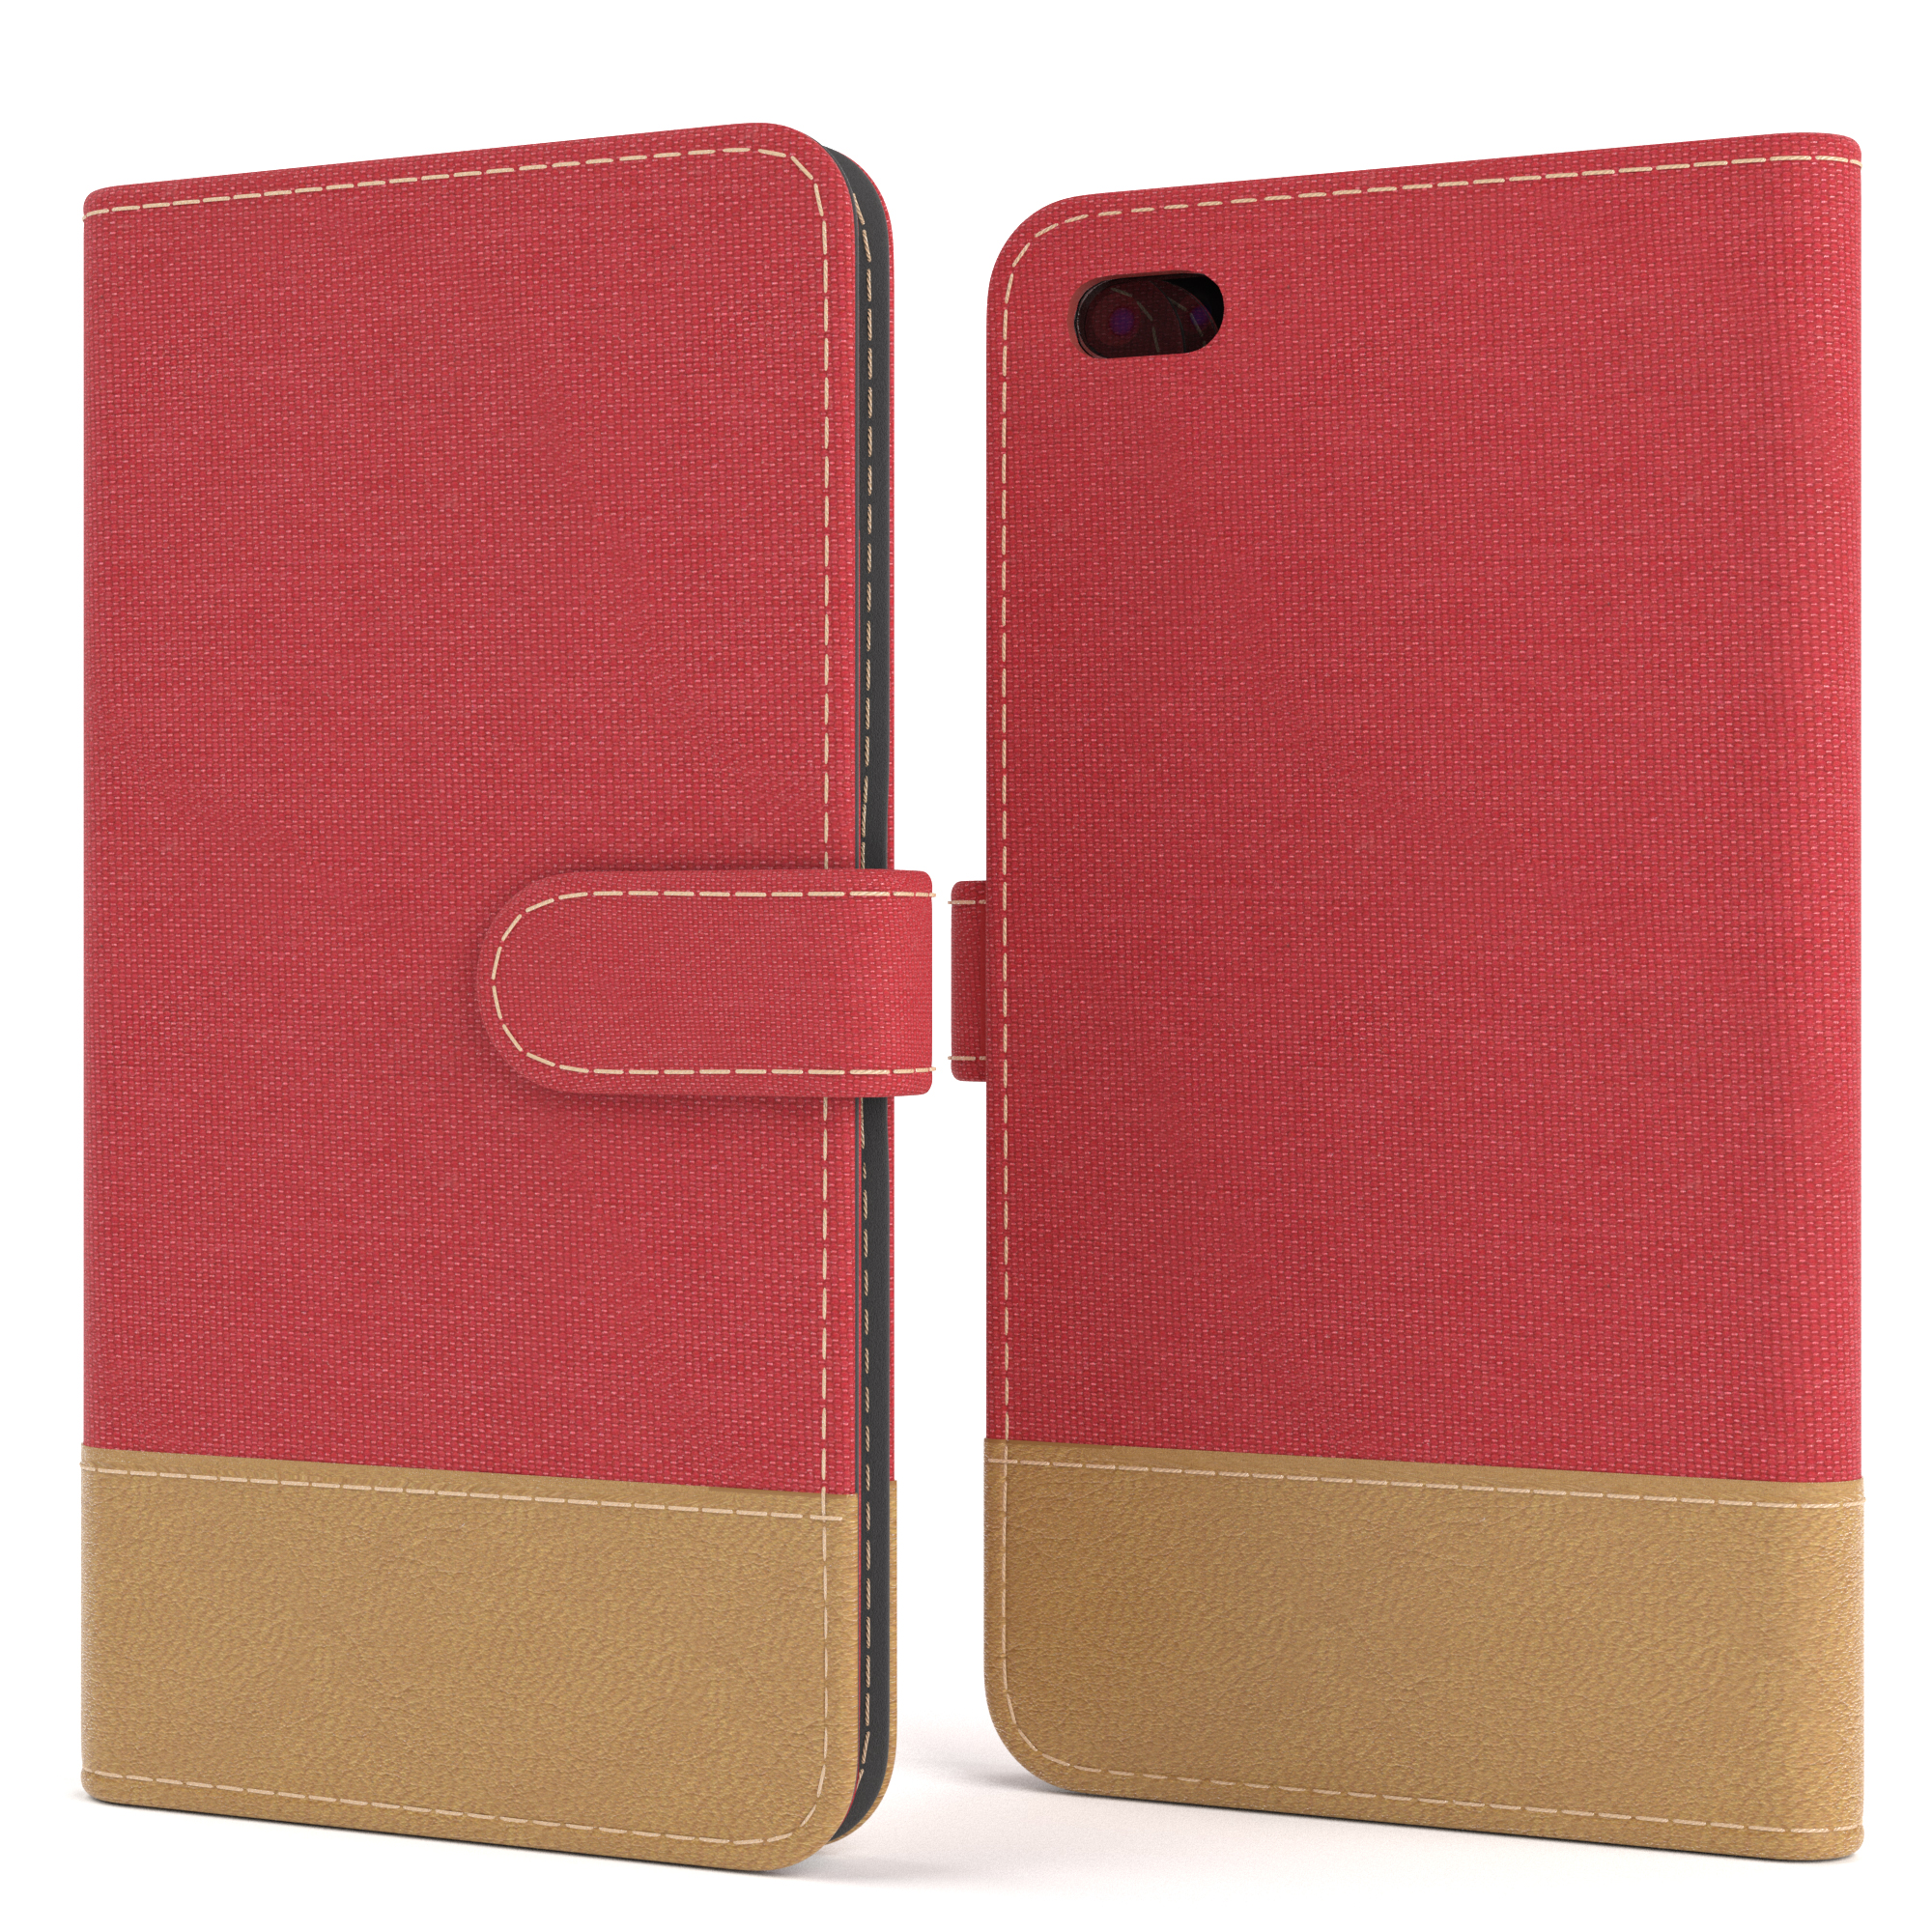 EAZY CASE Bookstyle Klapphülle Jeans Bookcover, Rot Plus, mit Plus 7 Apple, iPhone 8 / Kartenfach